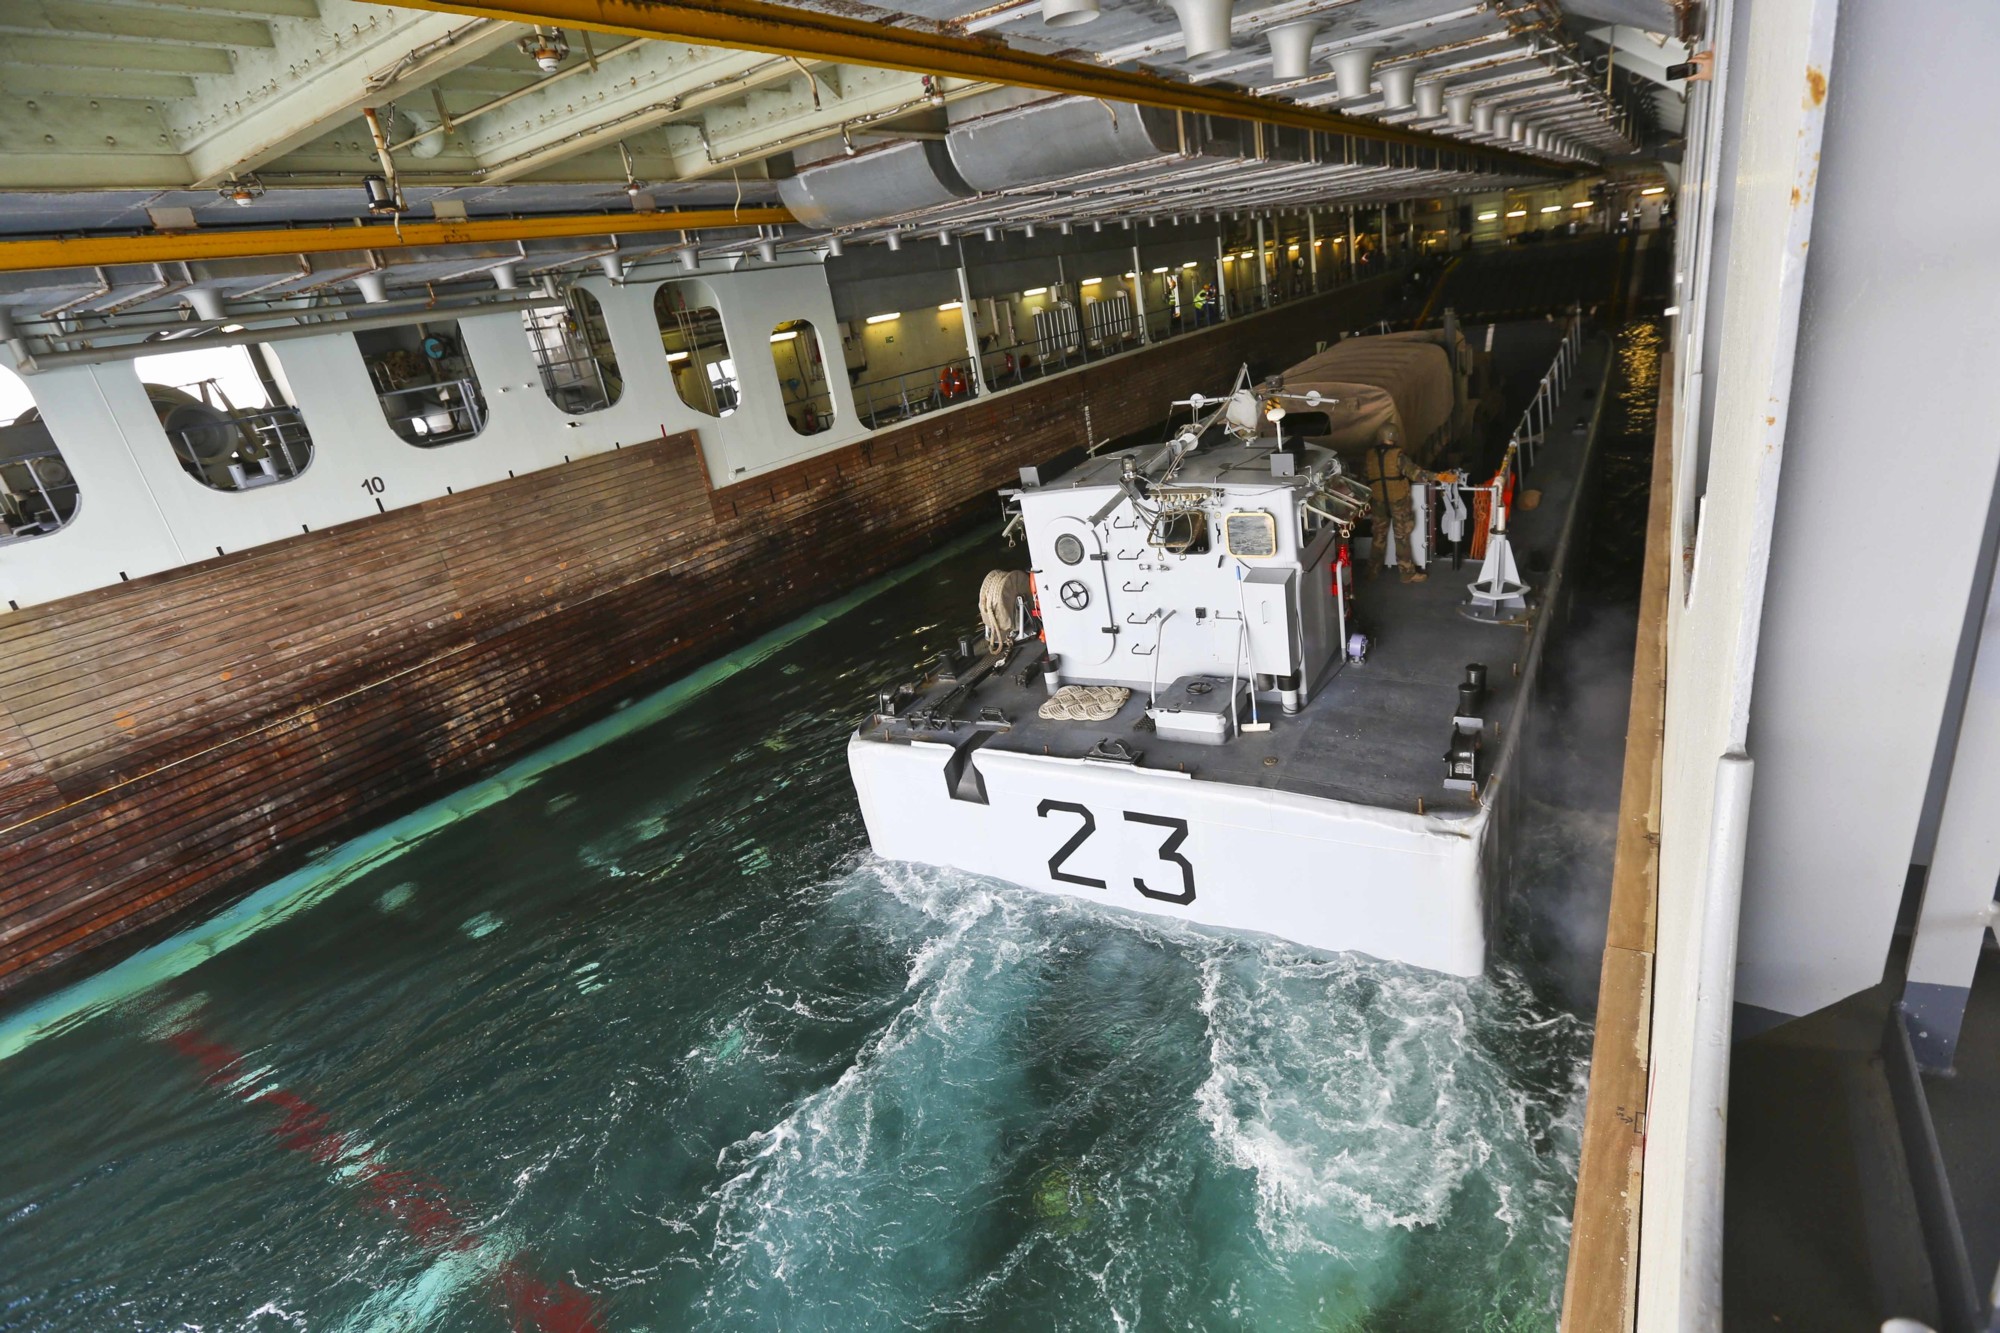 l-9014 fs tonnere mistral class amphibious assault command ship bpc french navy marine nationale 43 landing craft chaland de transport de matereiel ctm